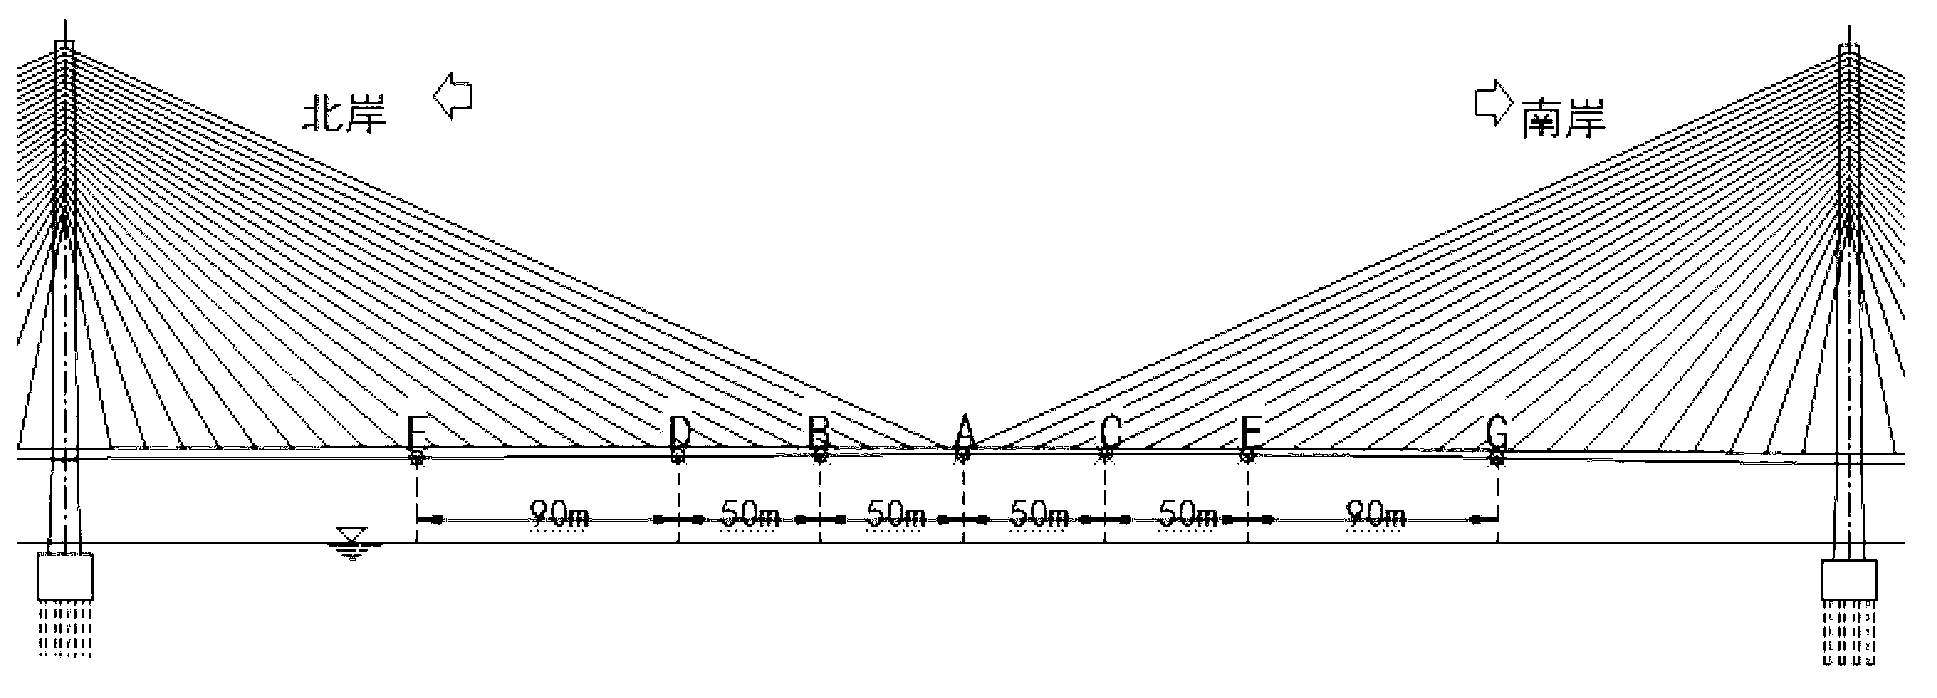 Large bridge clearance height measurement method